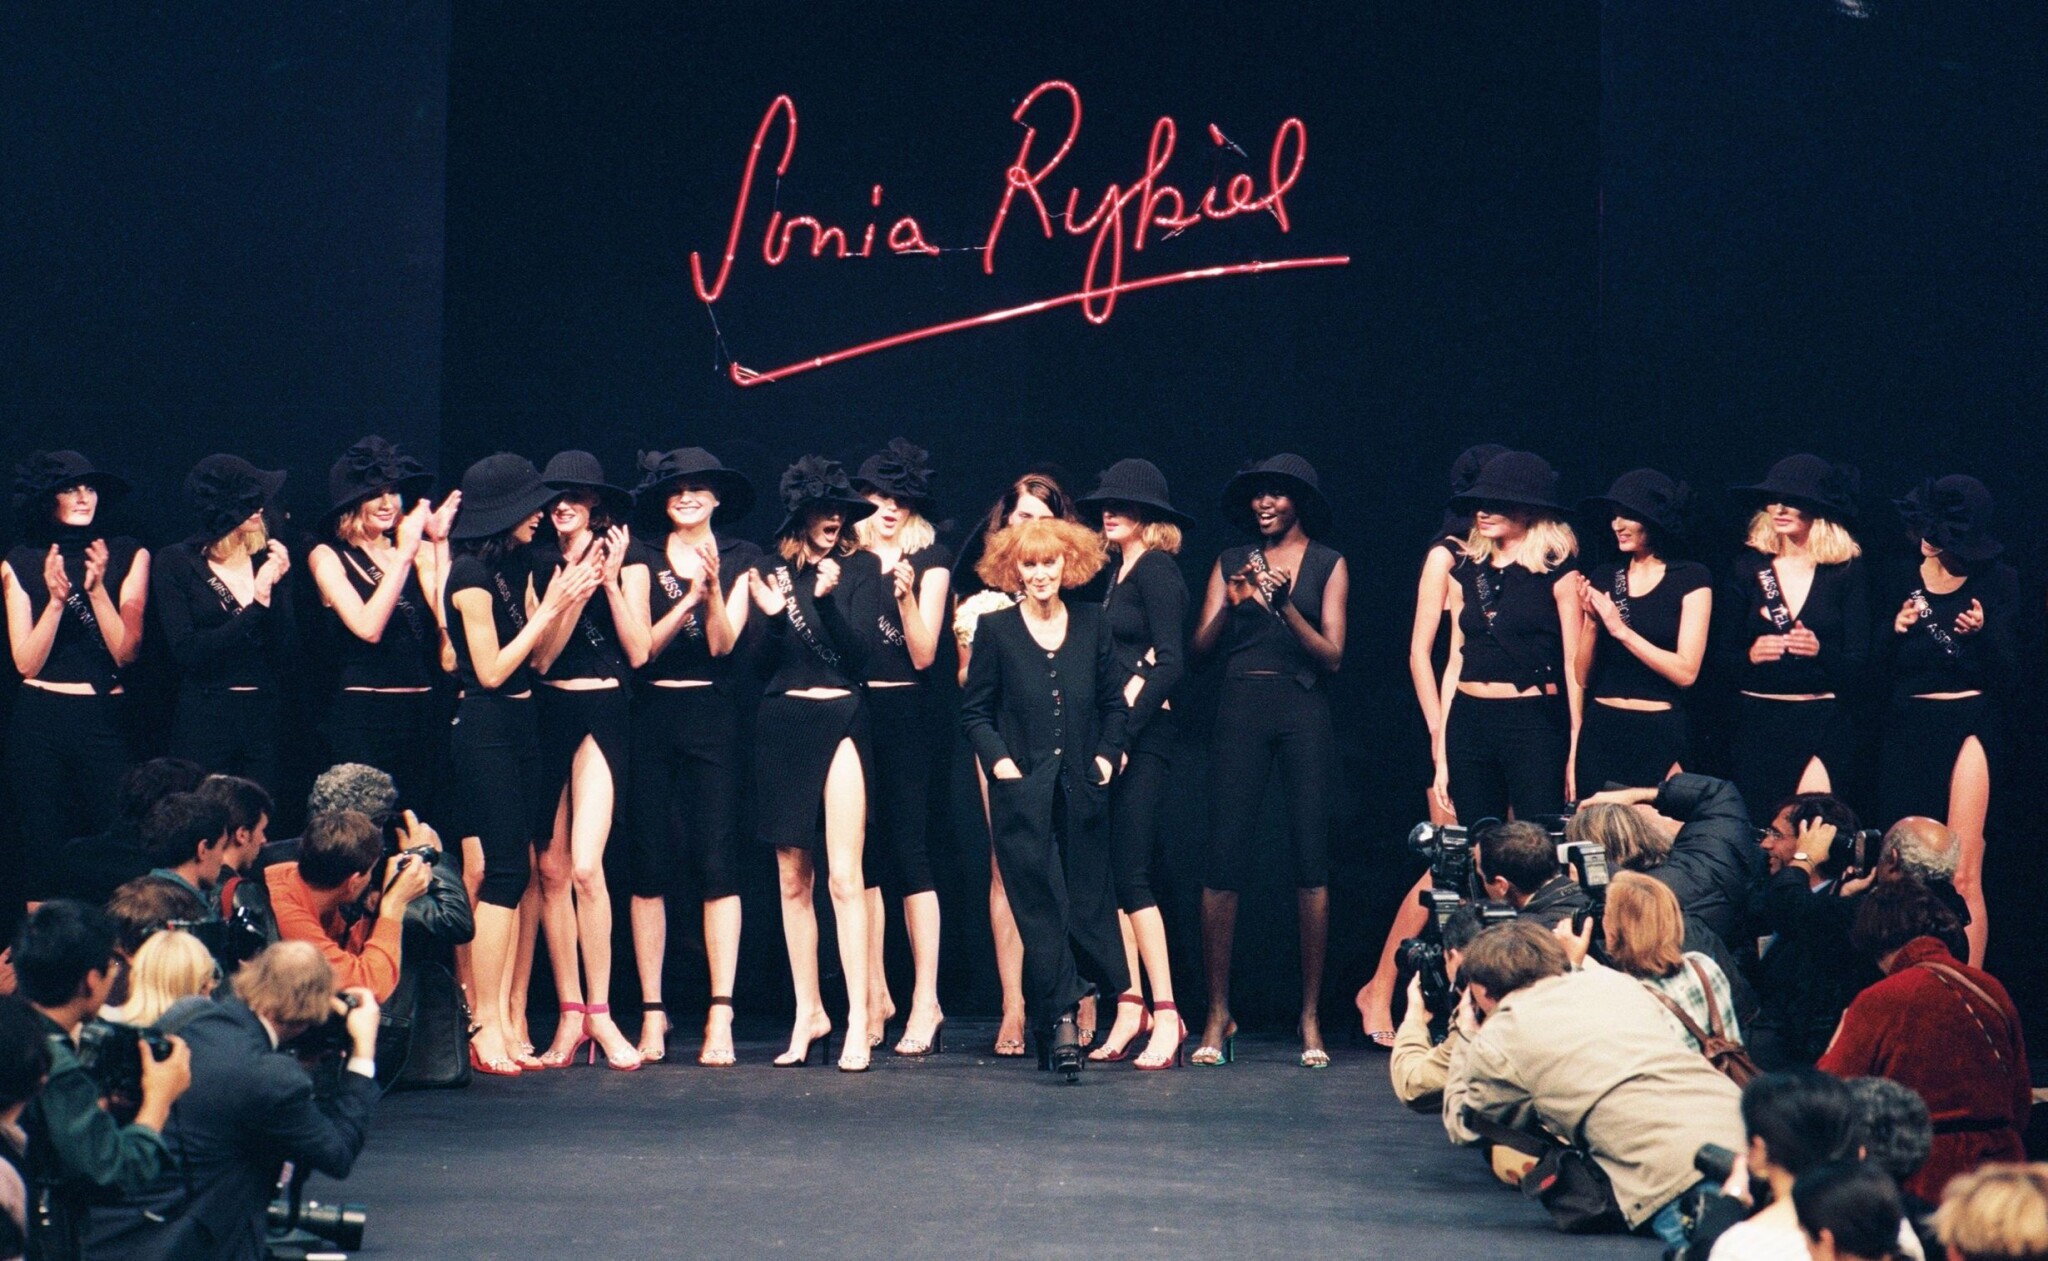 Proč končí Sonia Rykiel a co to říká o současném světě módy